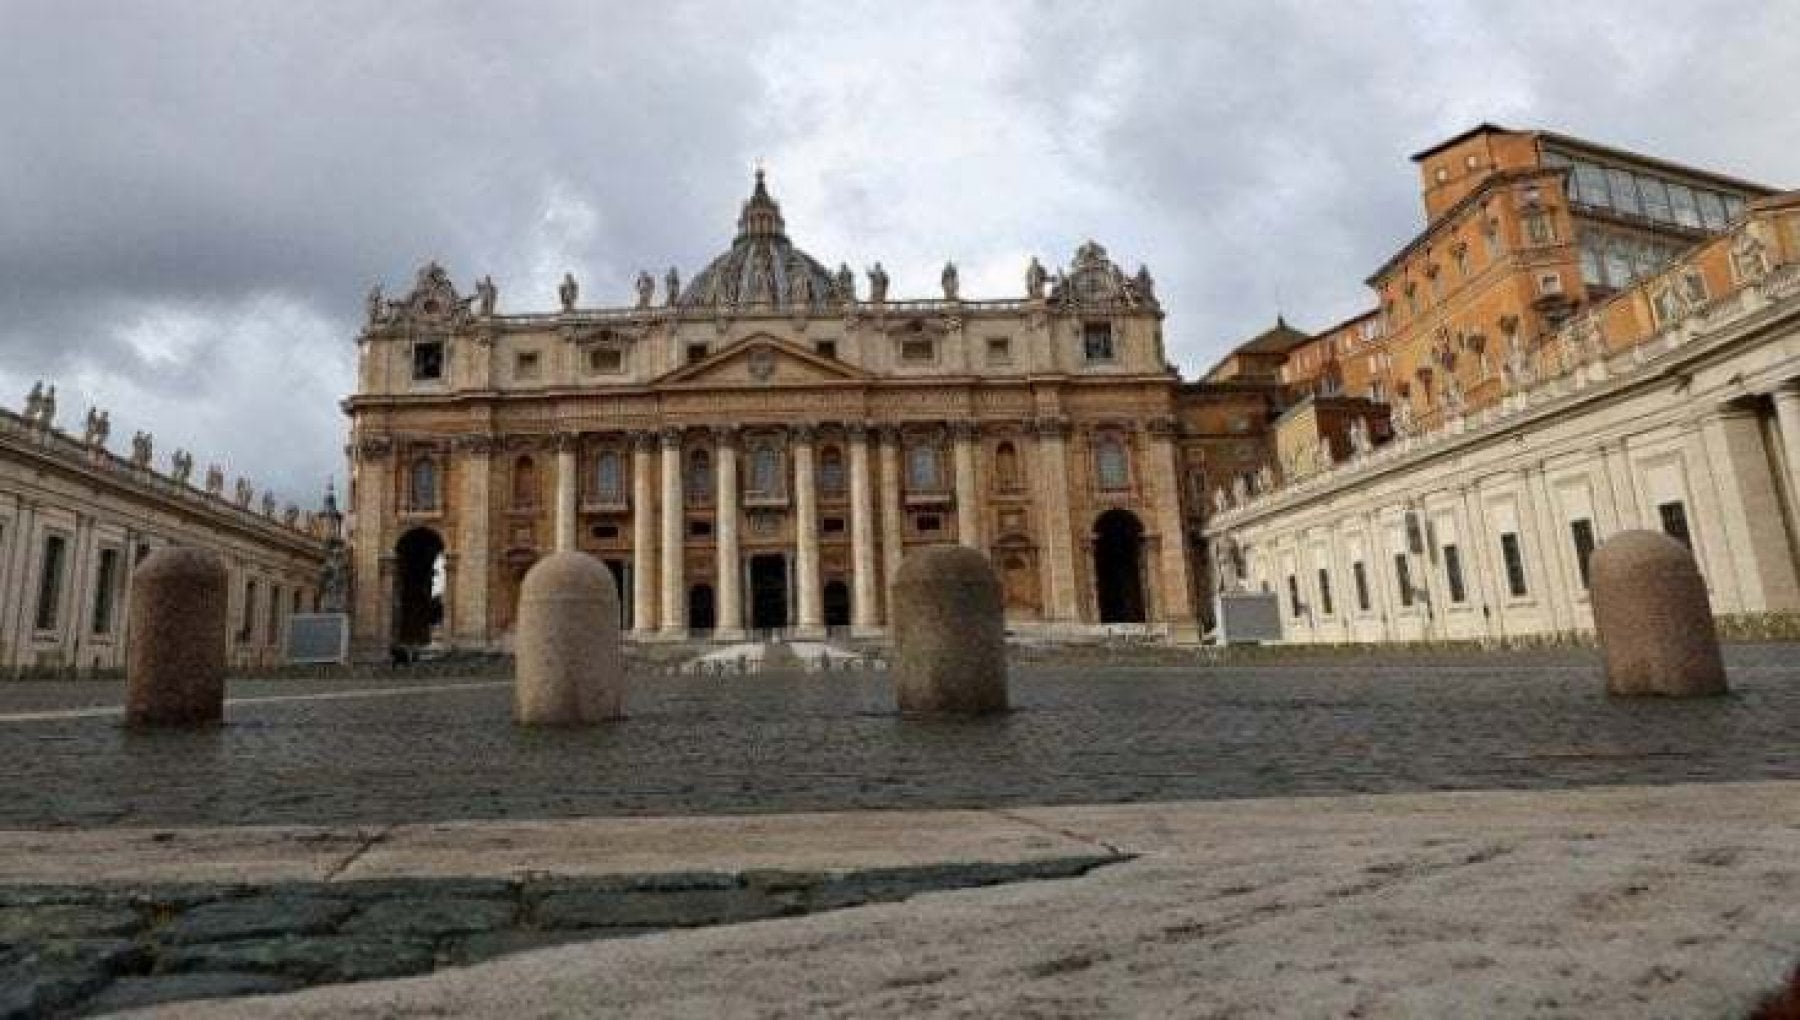 Pronunciata nel tribunale vaticano una condanna per abusi commessi in territorio vaticano. È la prima volta che accade